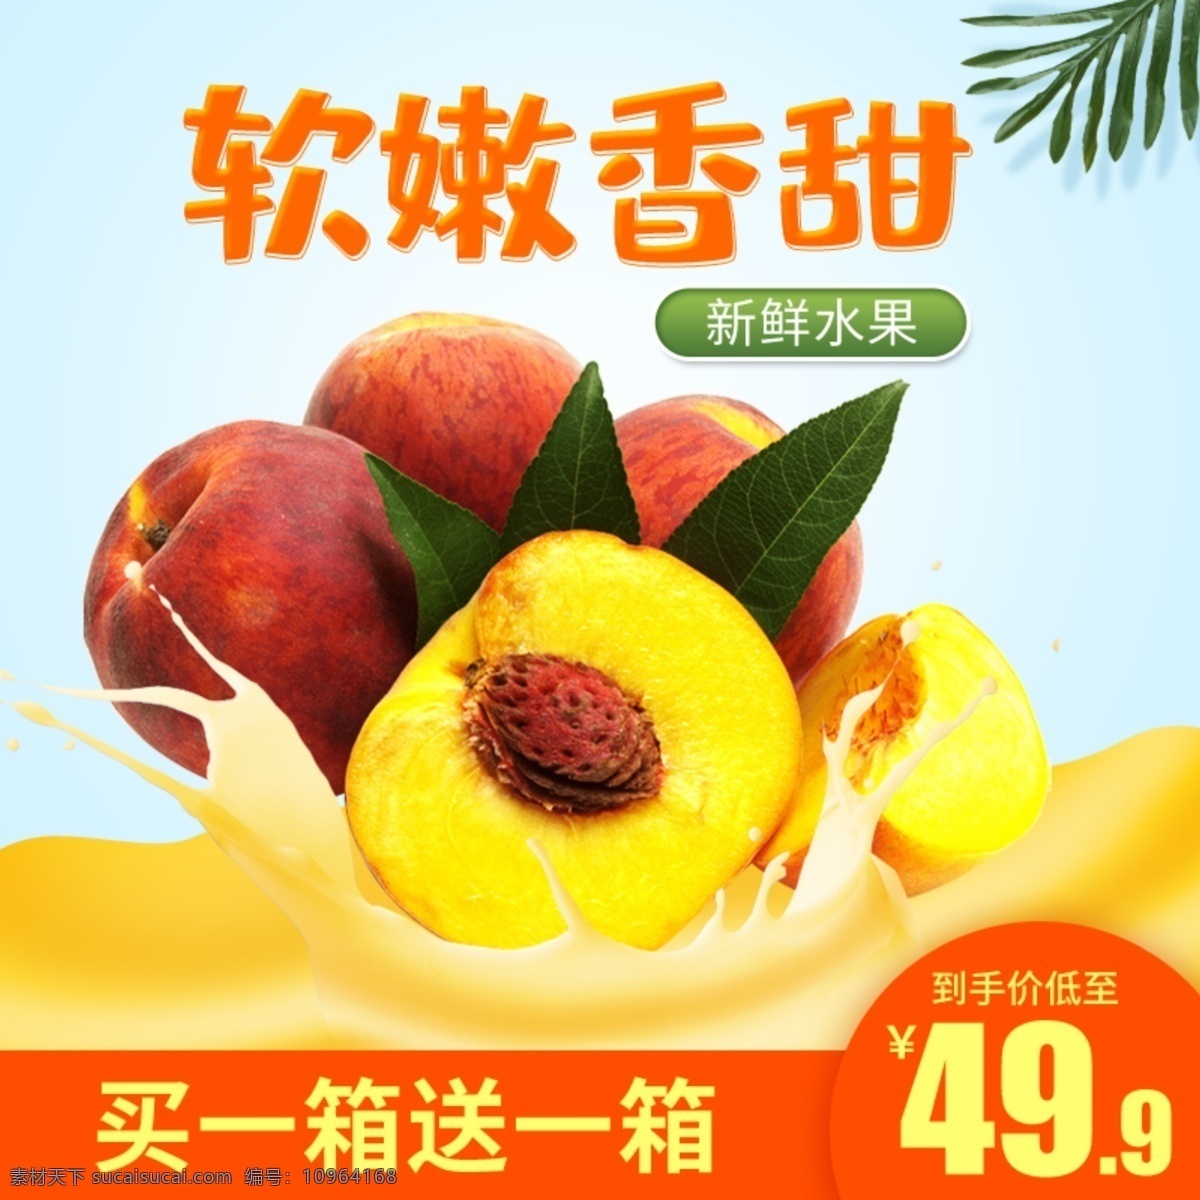 夏季 新鲜 水果 黄桃 主 图 新鲜水果 黄桃主图 树叶 果汁